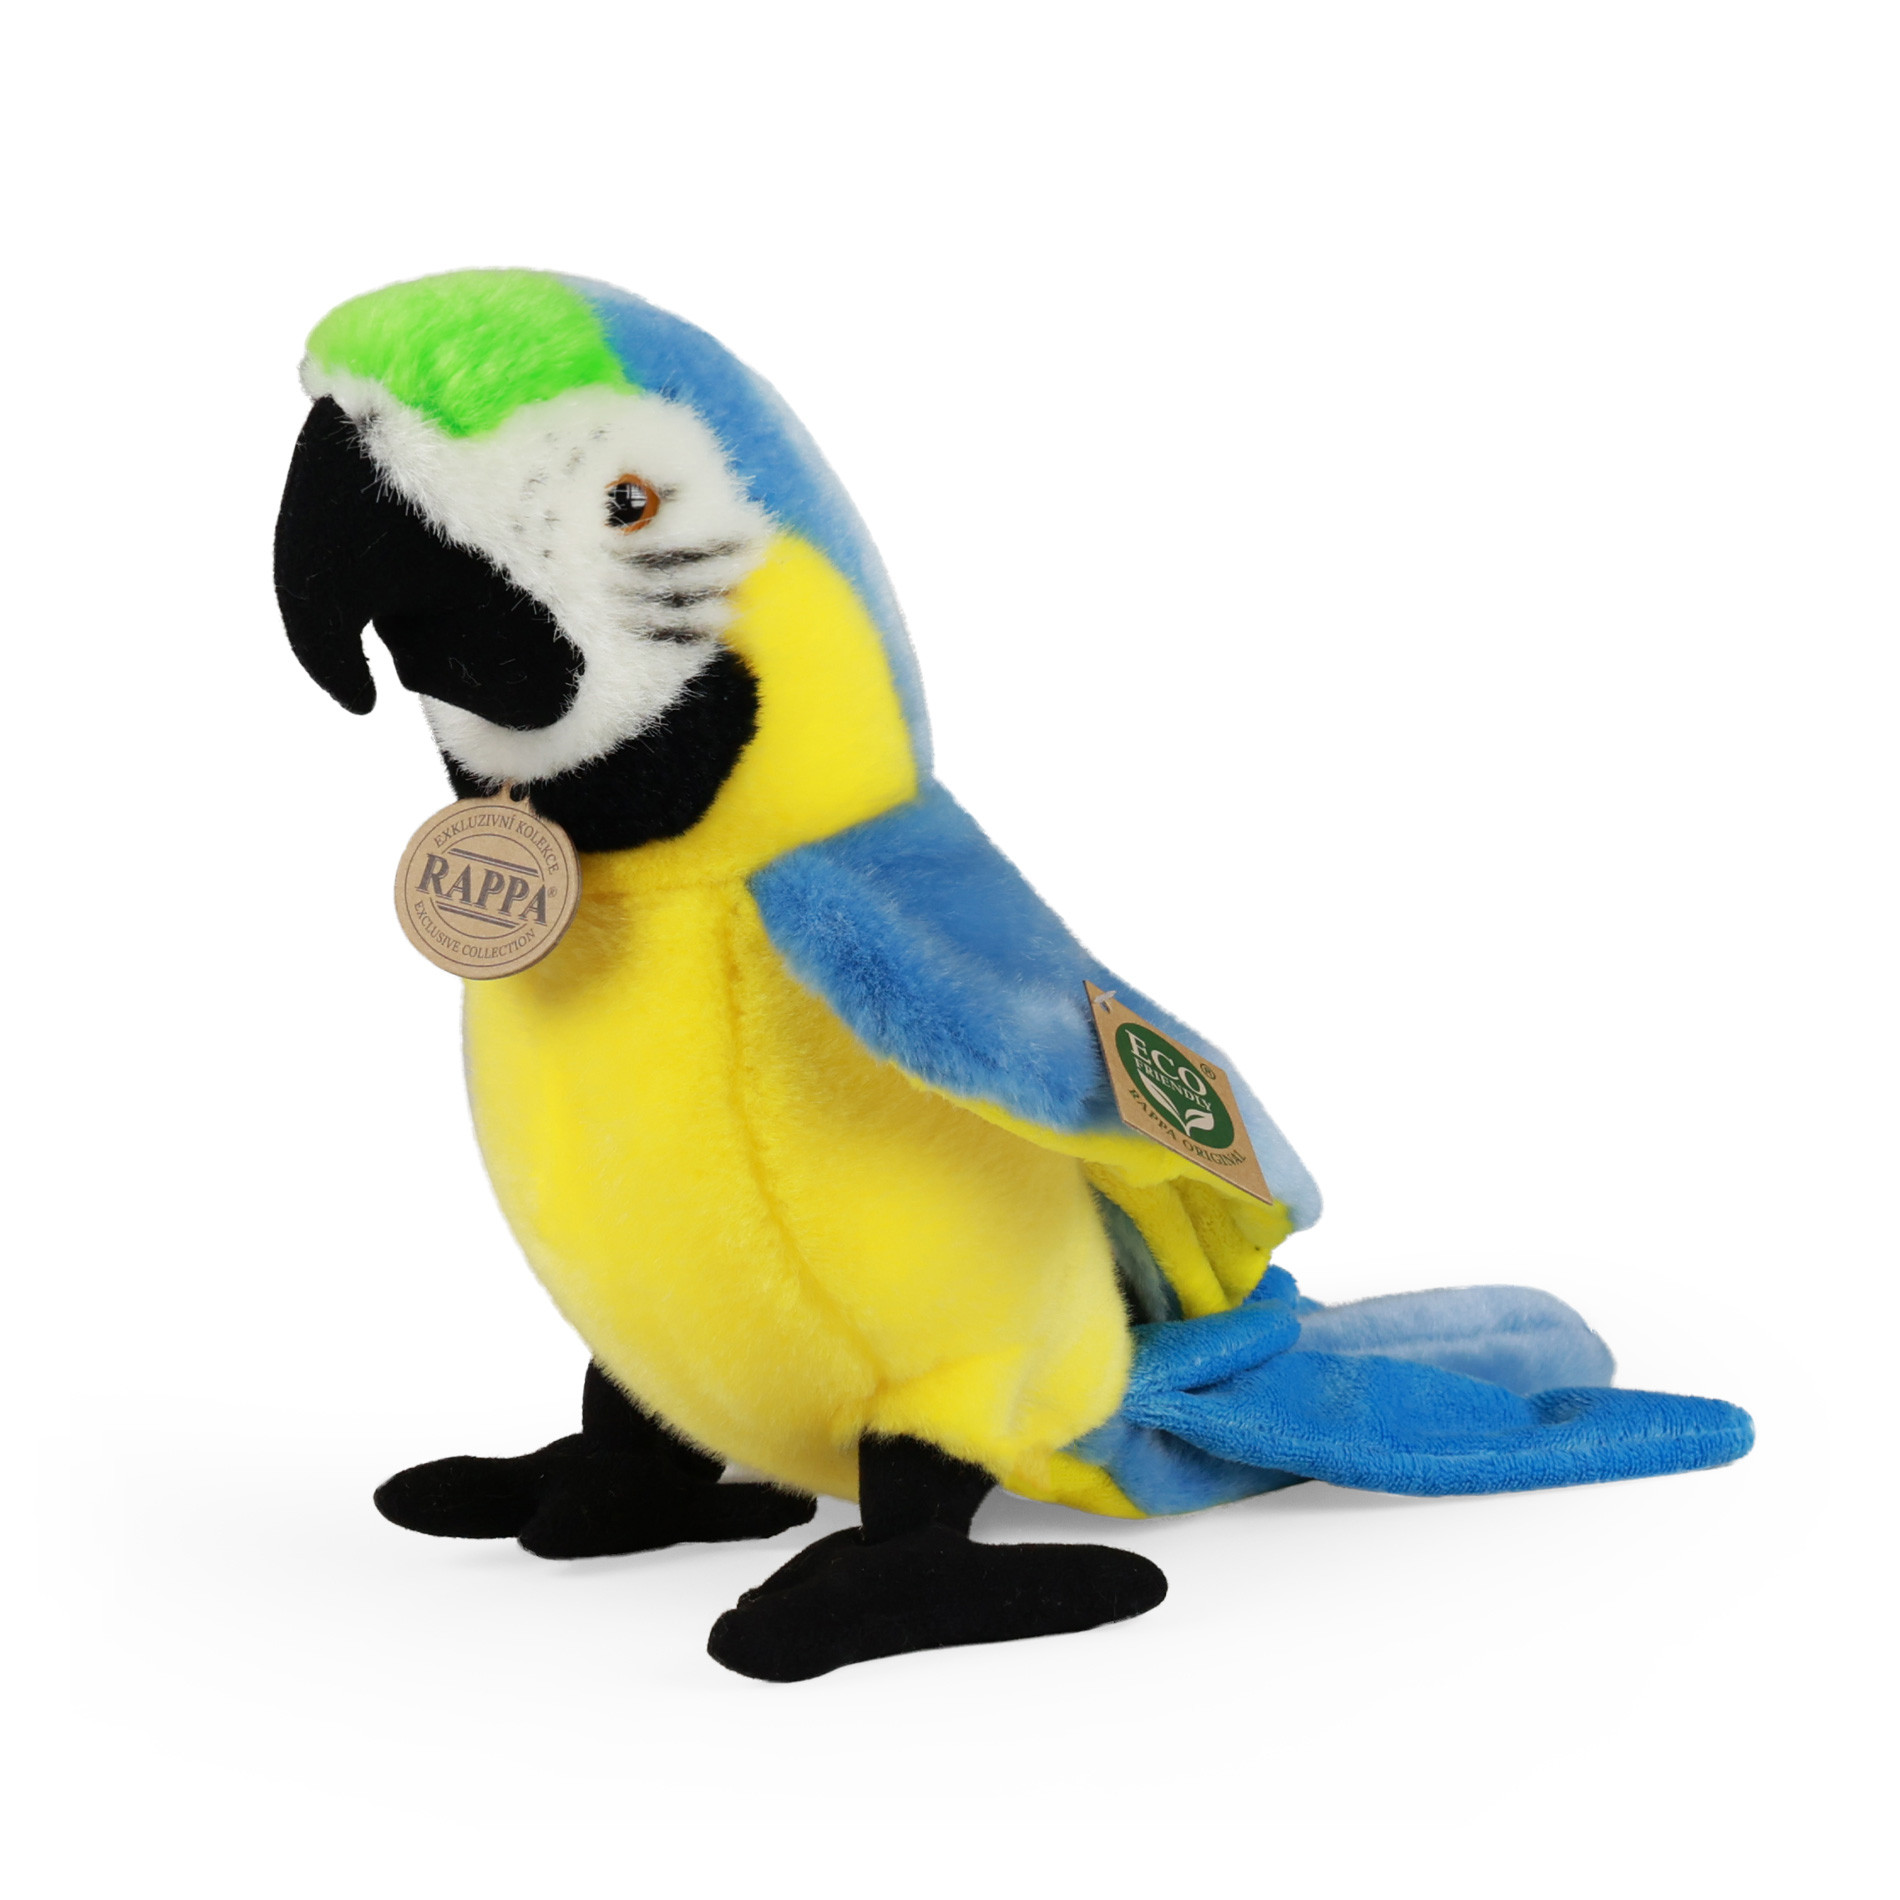 Plyšový papagáj ara modry 25 cm ECO-FRIENDLY